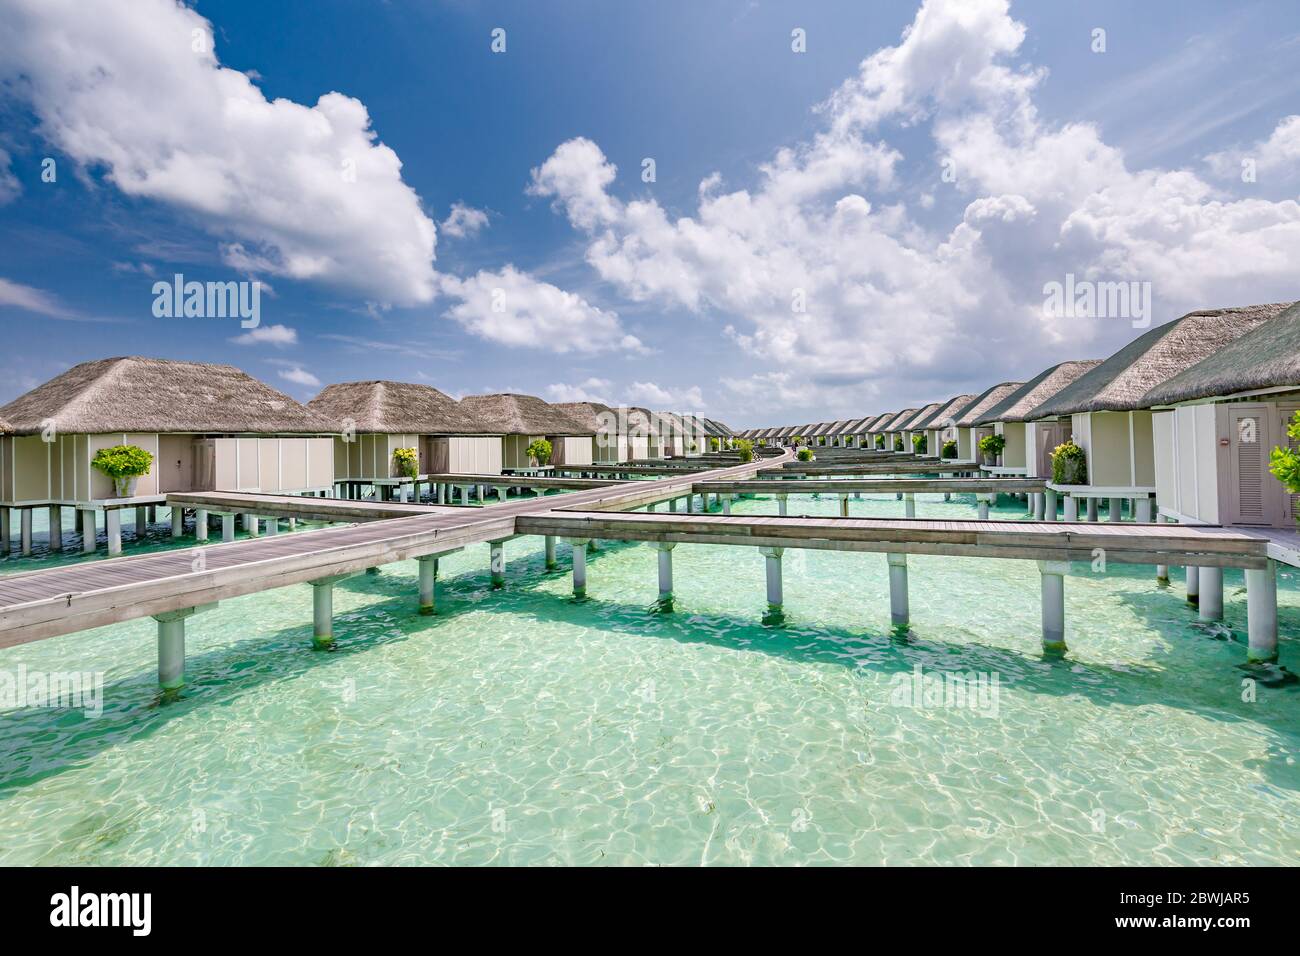 Paradis tropical : vue sur les bungalows sur l'eau dans un complexe des Maldives, Océan Indien. Plage paradisiaque. Vacances concept de tourisme Banque D'Images